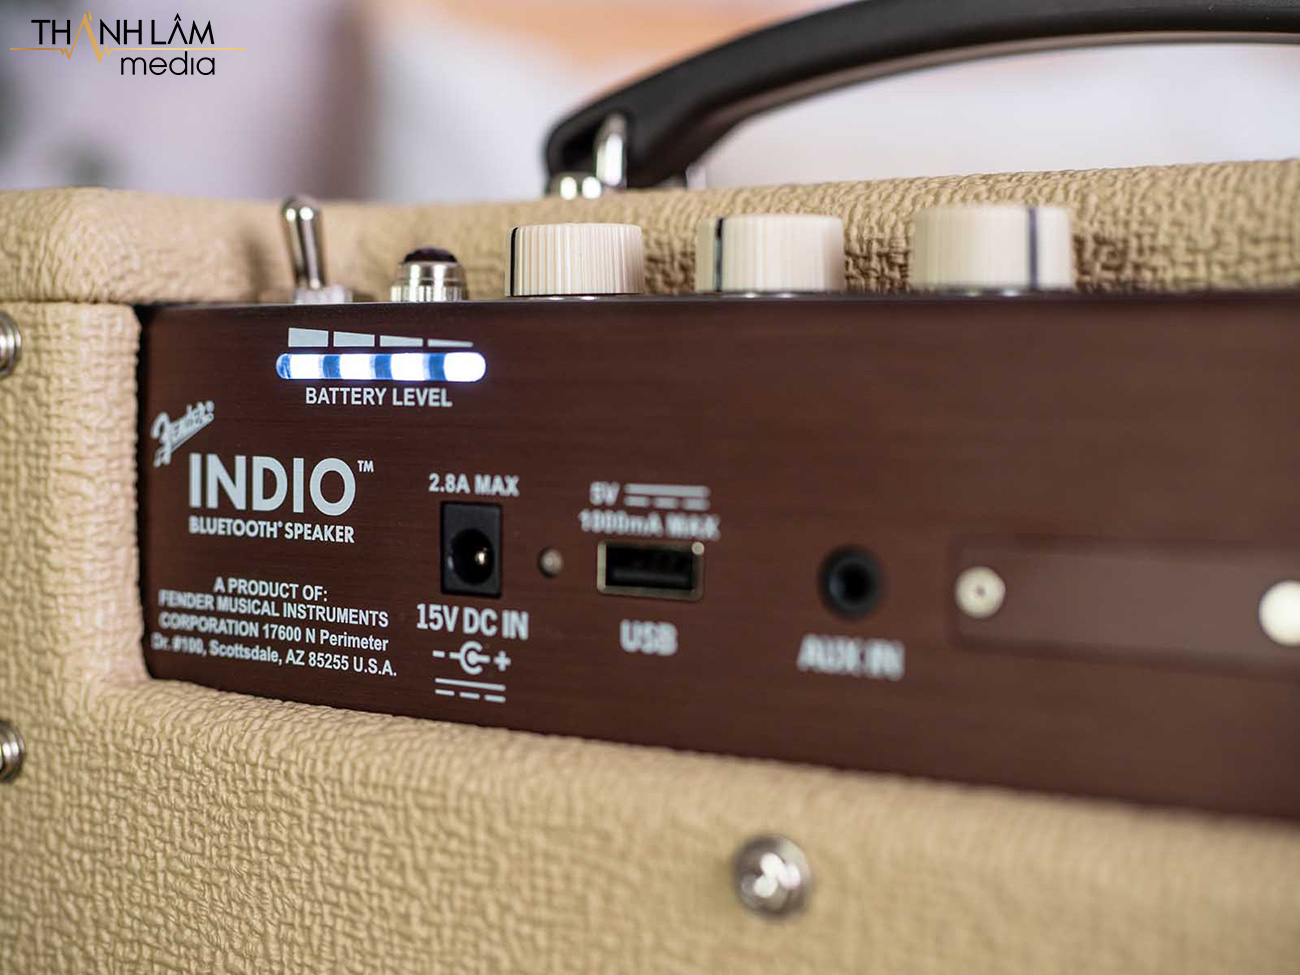 Pin tích hợp của Fender Indio có thời lượng sử dụng vào khoảng 25 tiếng